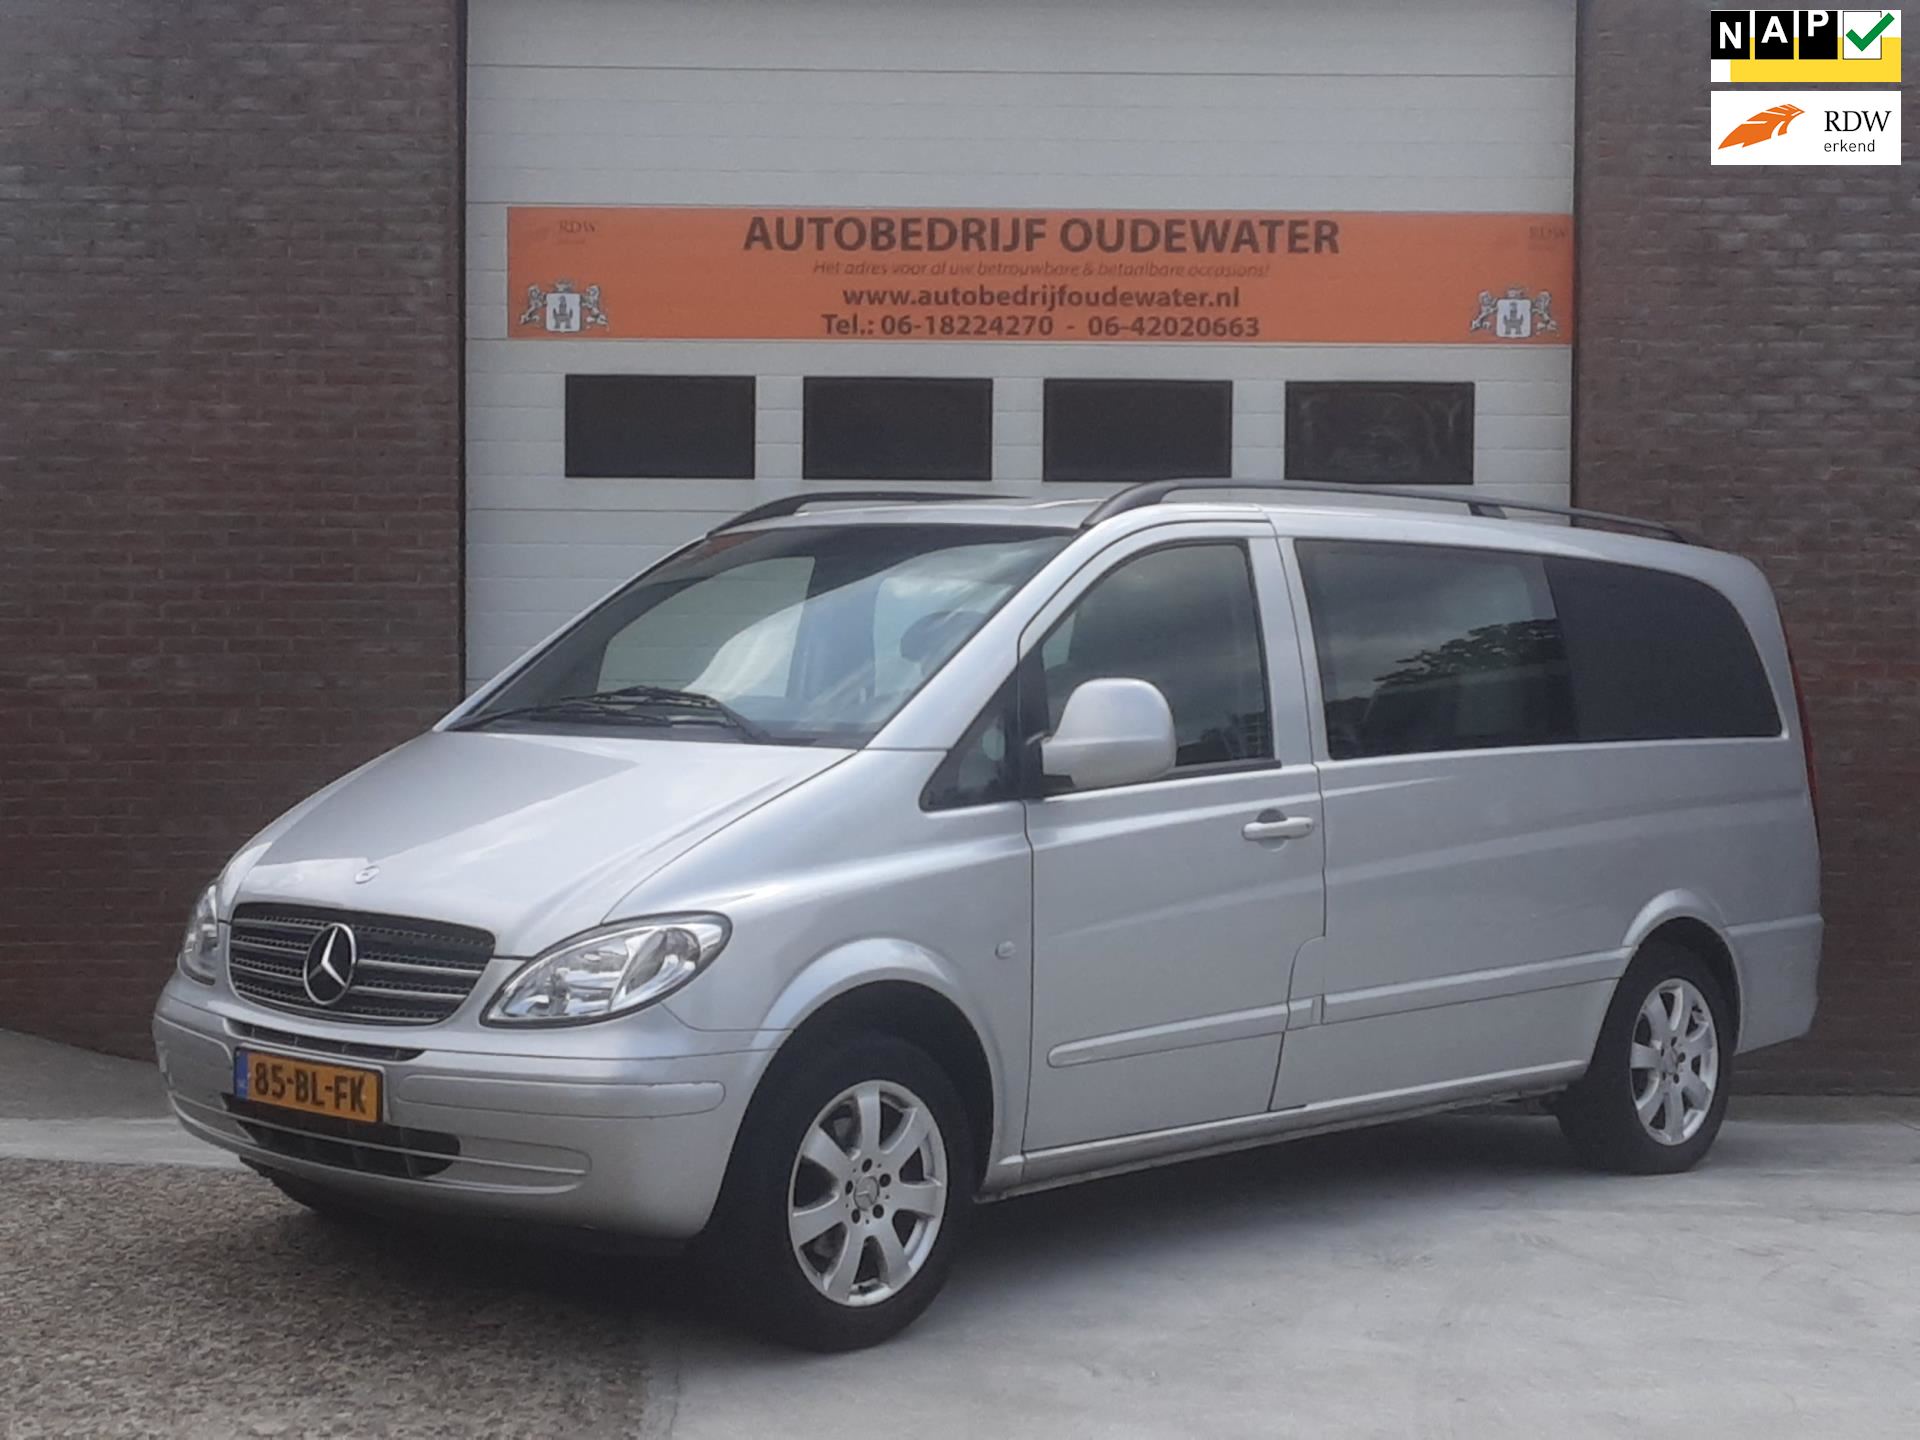 Mercedes-Benz Vito occasion - Autobedrijf Oudewater